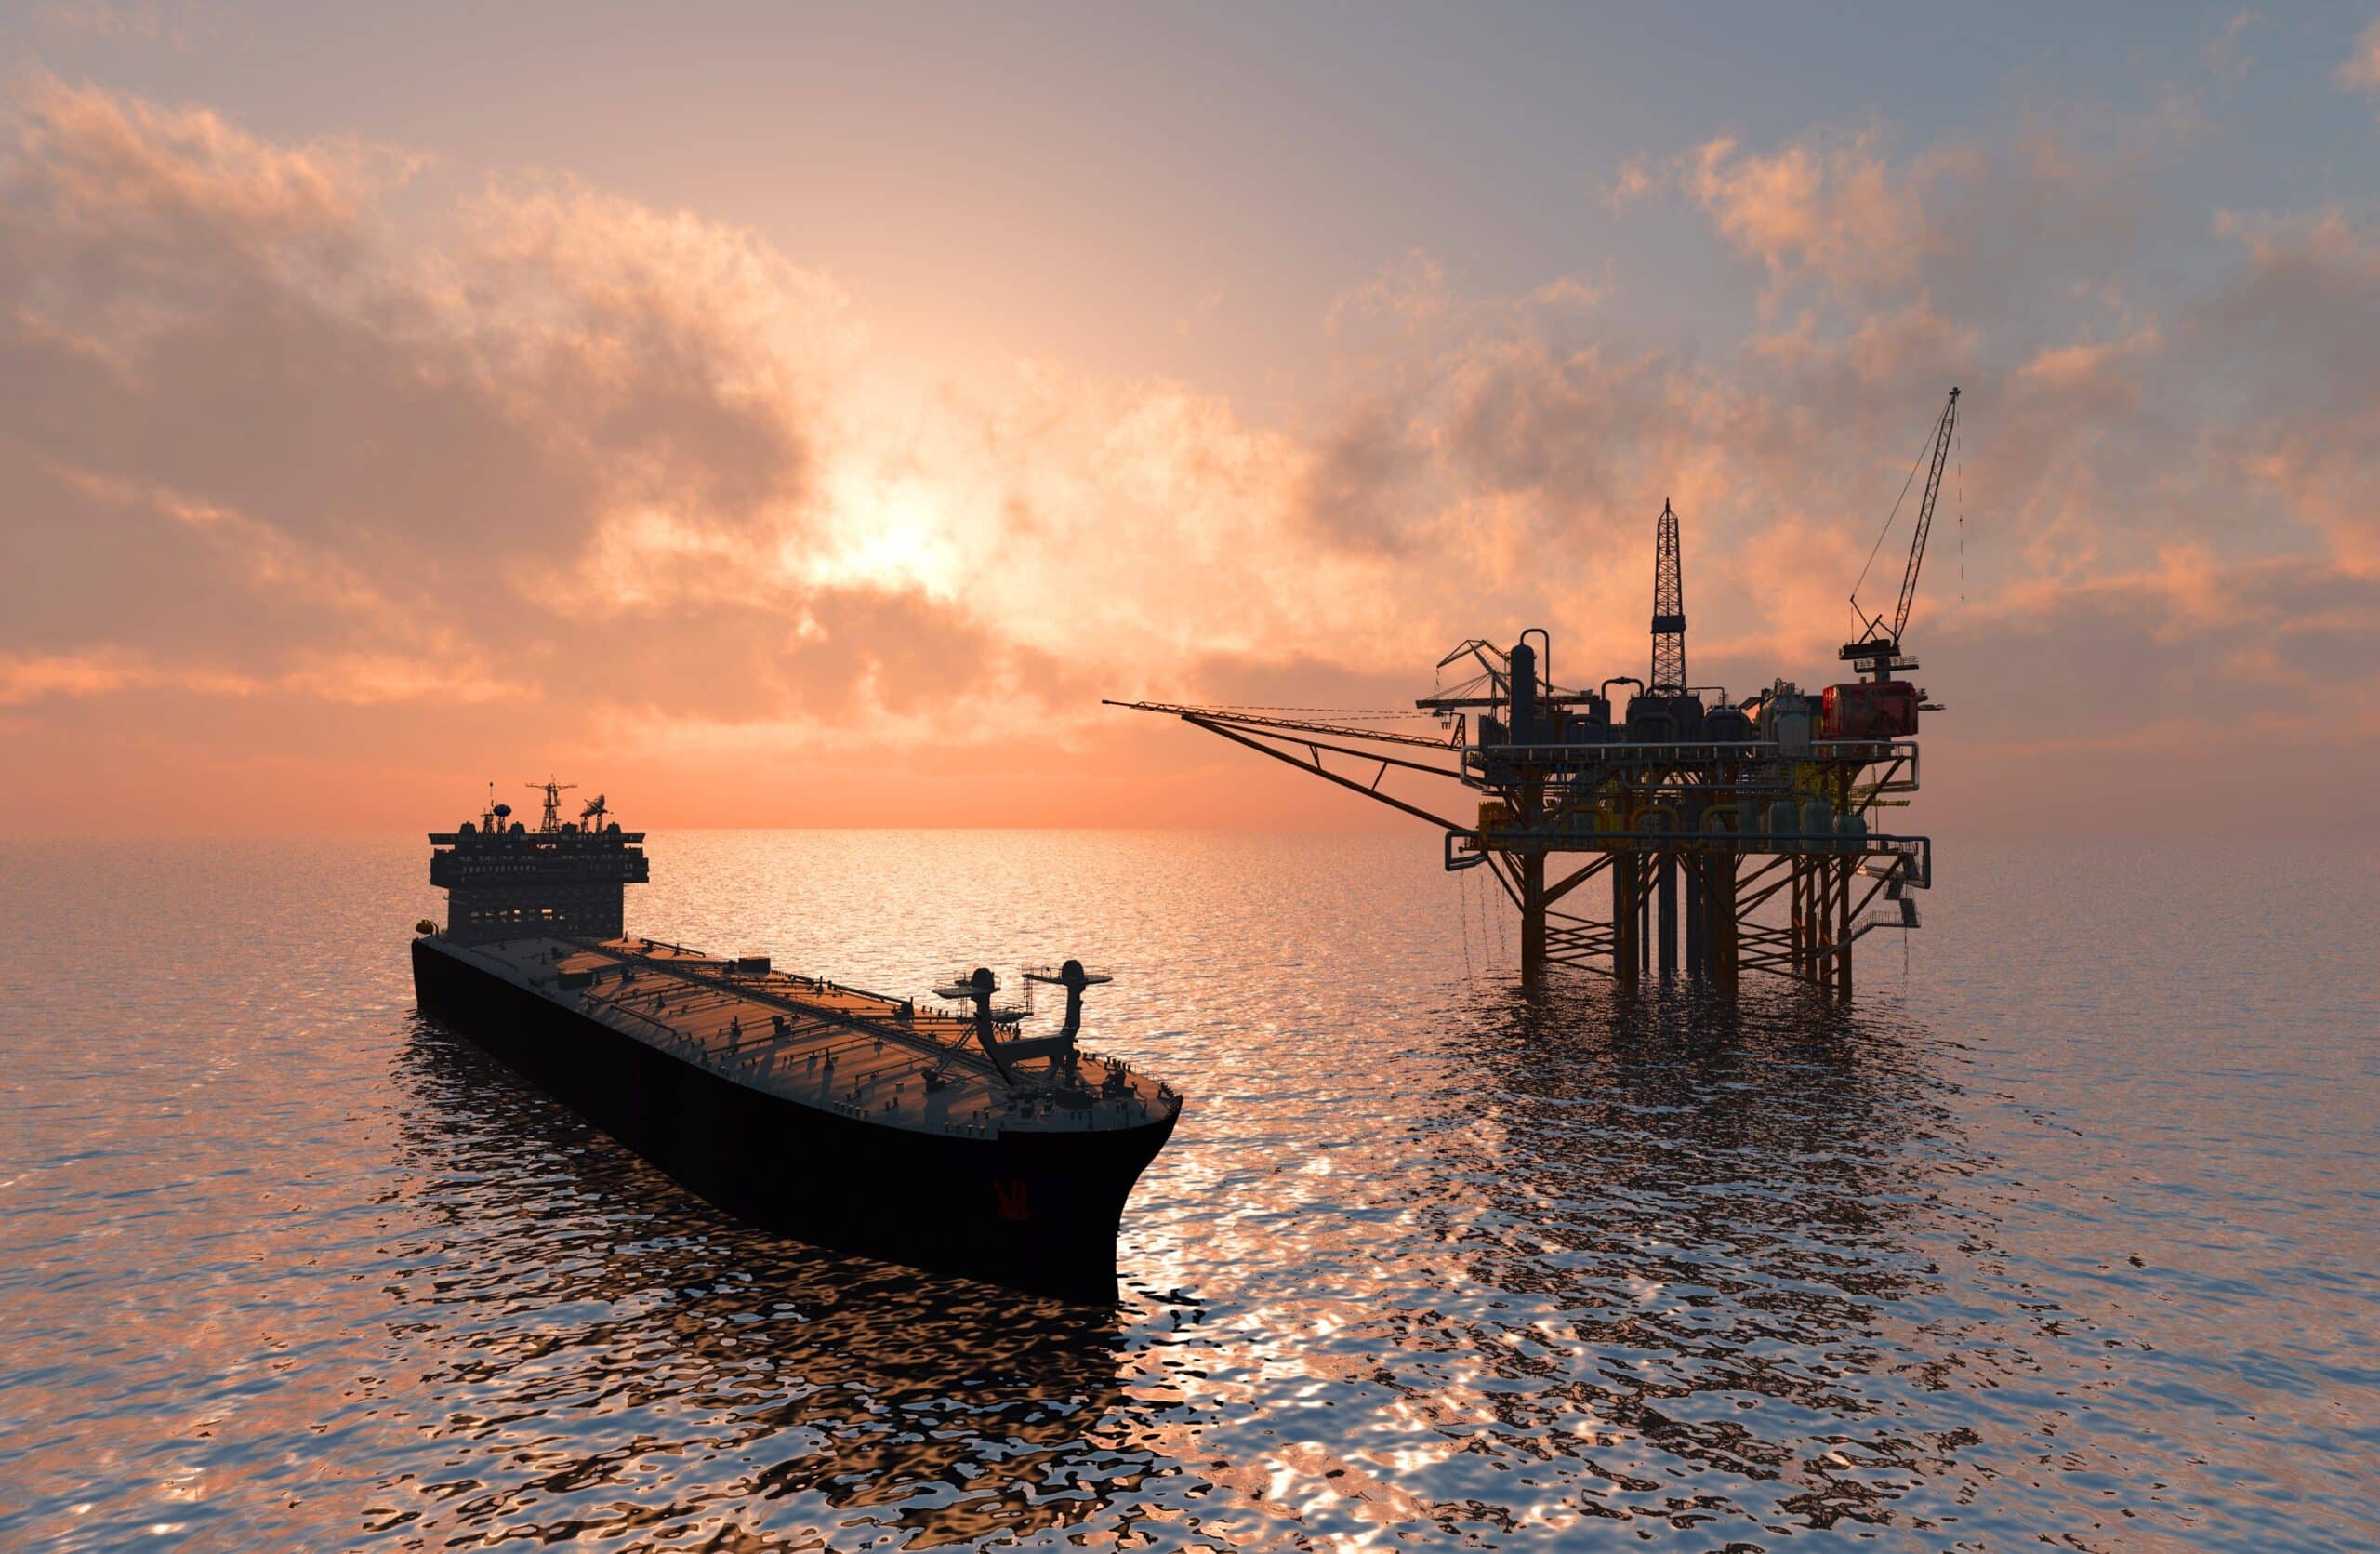 ANP petroleo gas natural investimentos scaled